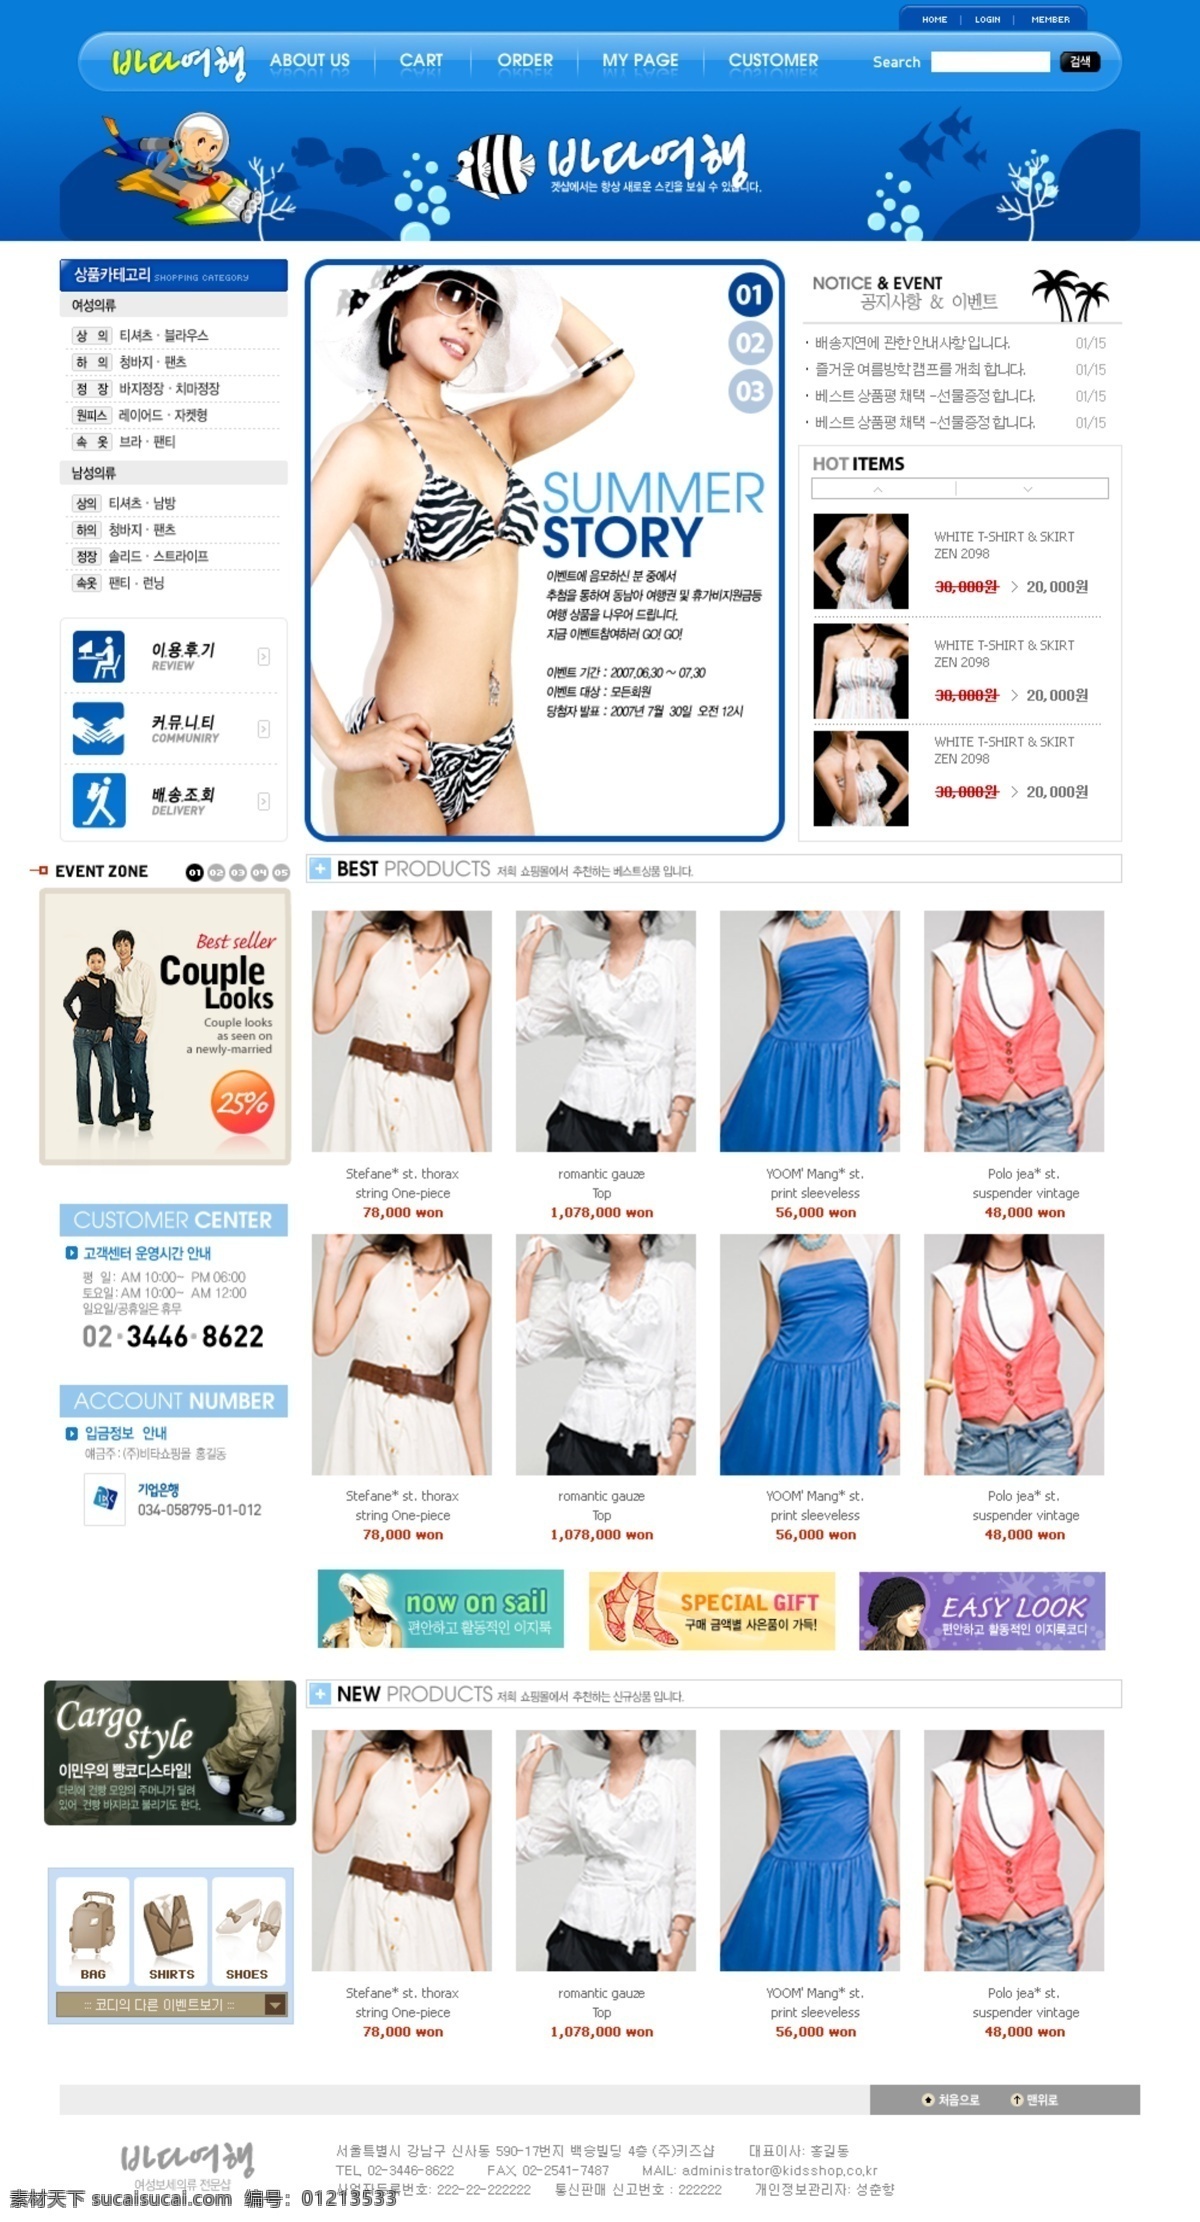 女工 服装 促销 网页 服装促销 网页模板 网页设计 网站模板 网店促销 宣传网页 网页素材